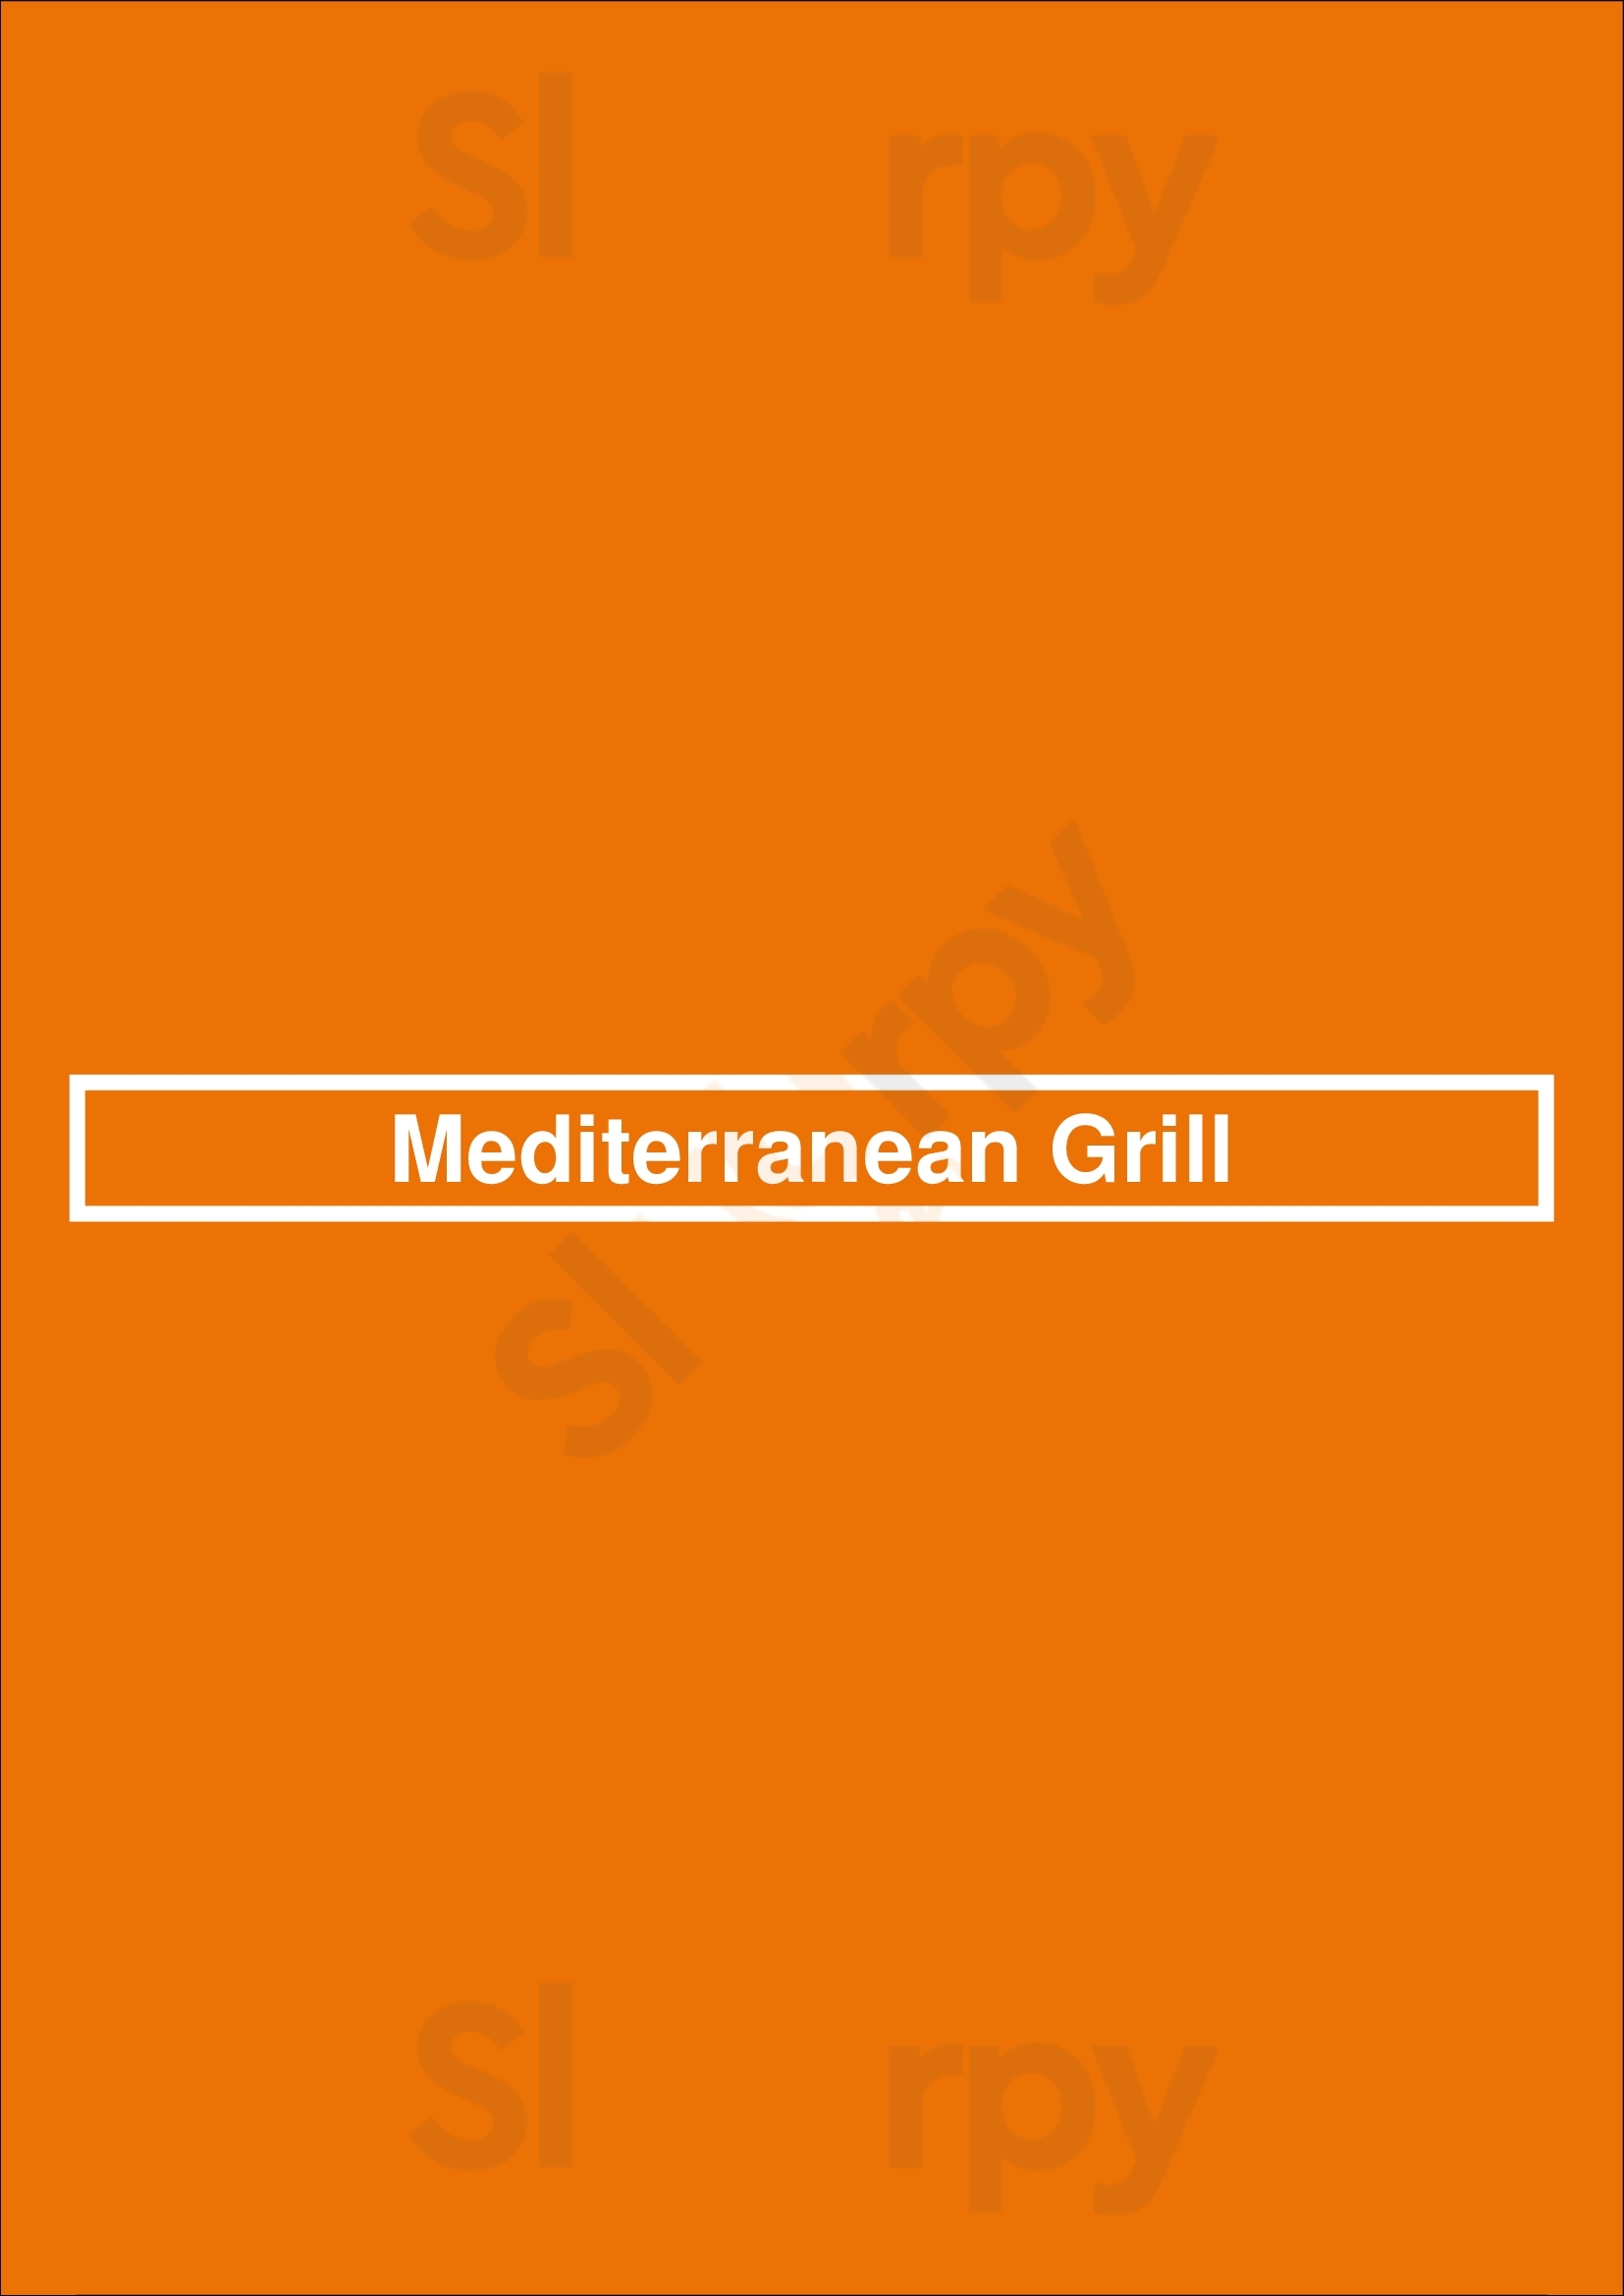 Mediterranean Grill Vancouver Menu - 1